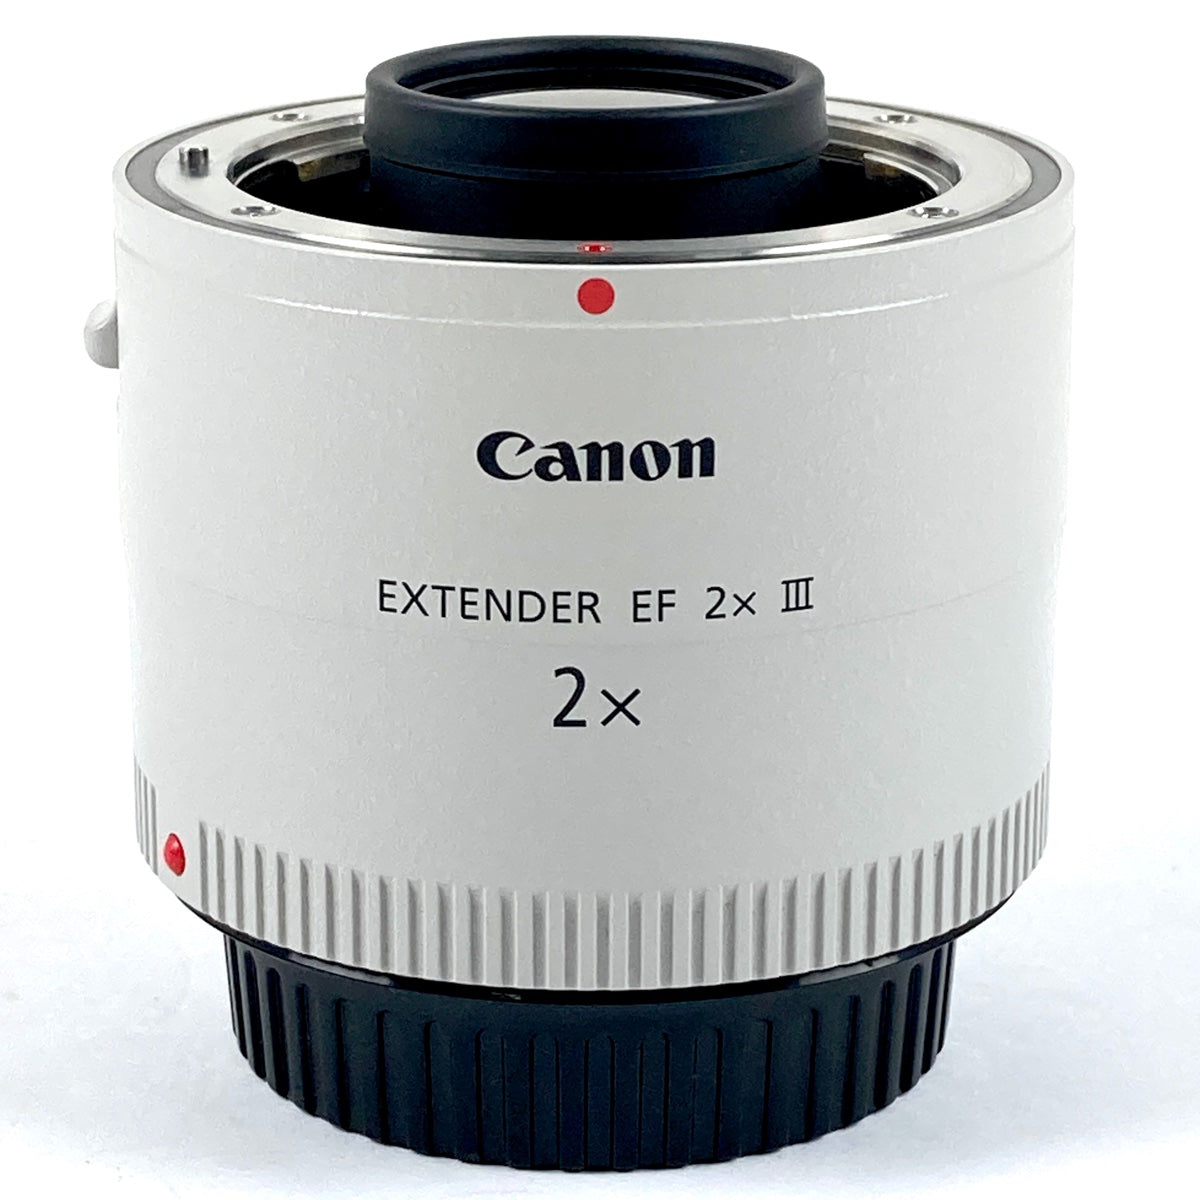 バイセル公式】キヤノン Canon EXTENDER EF 2x III エクステンダー 【中古】 - バイセルブランシェ